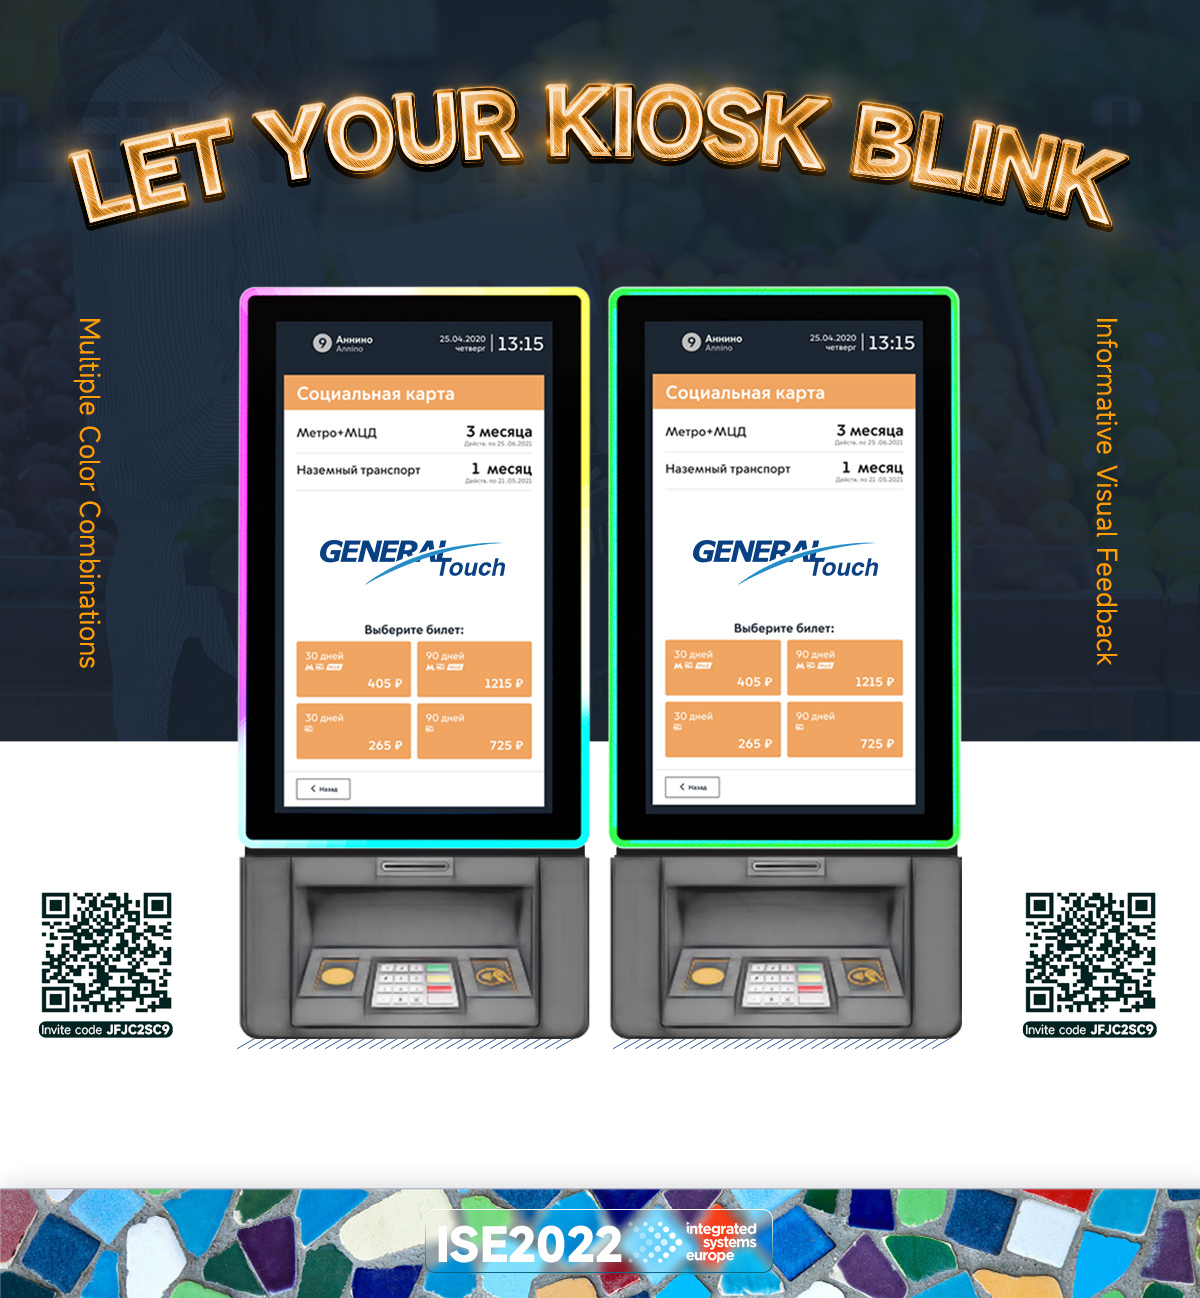 Let Your Kiosk Blink